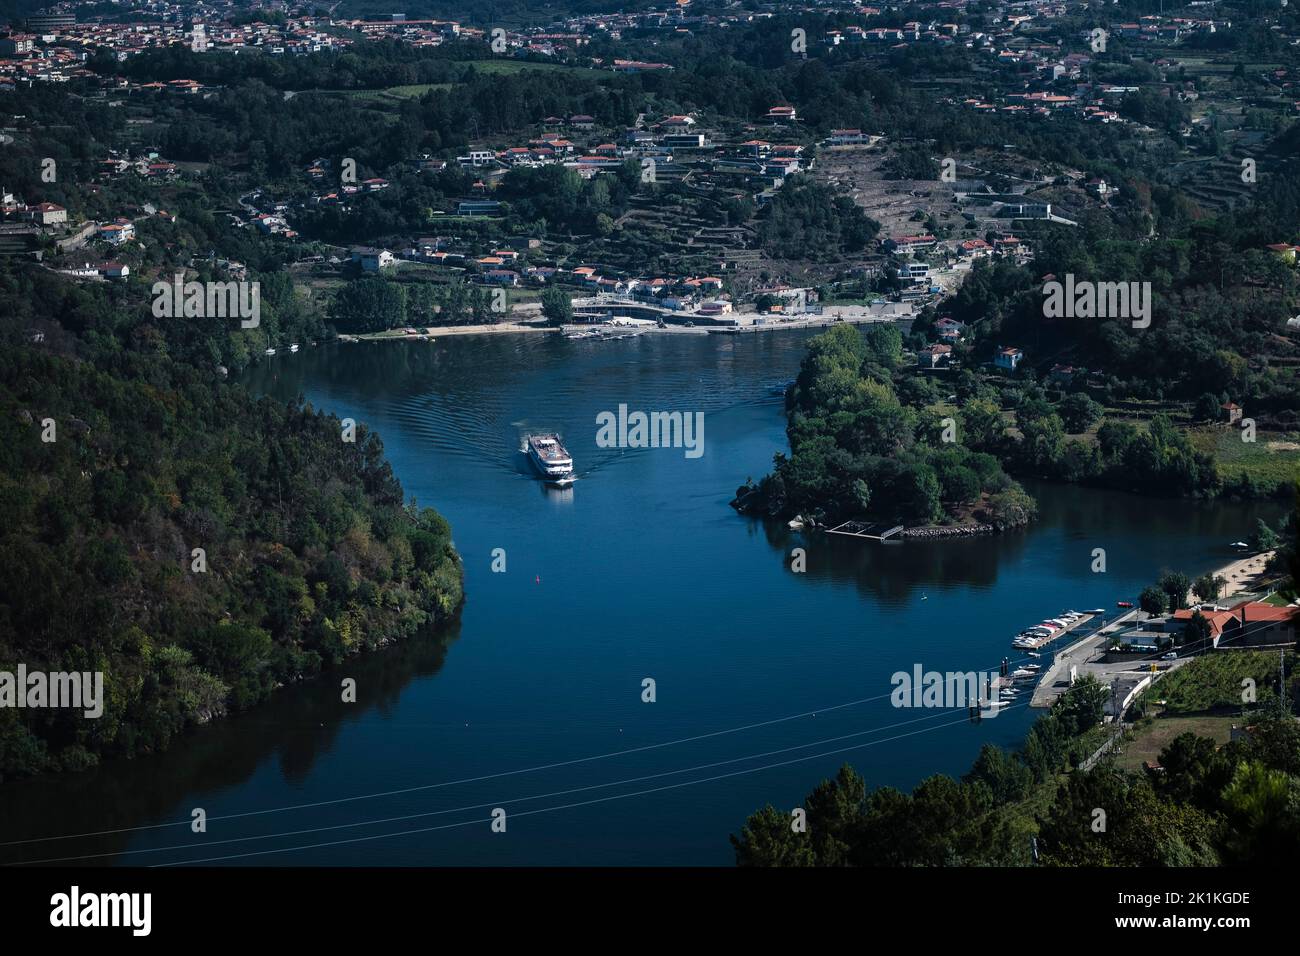 Douro River with a pleasure boat in the Douro Valley, Porto, Portugal. Stock Photo